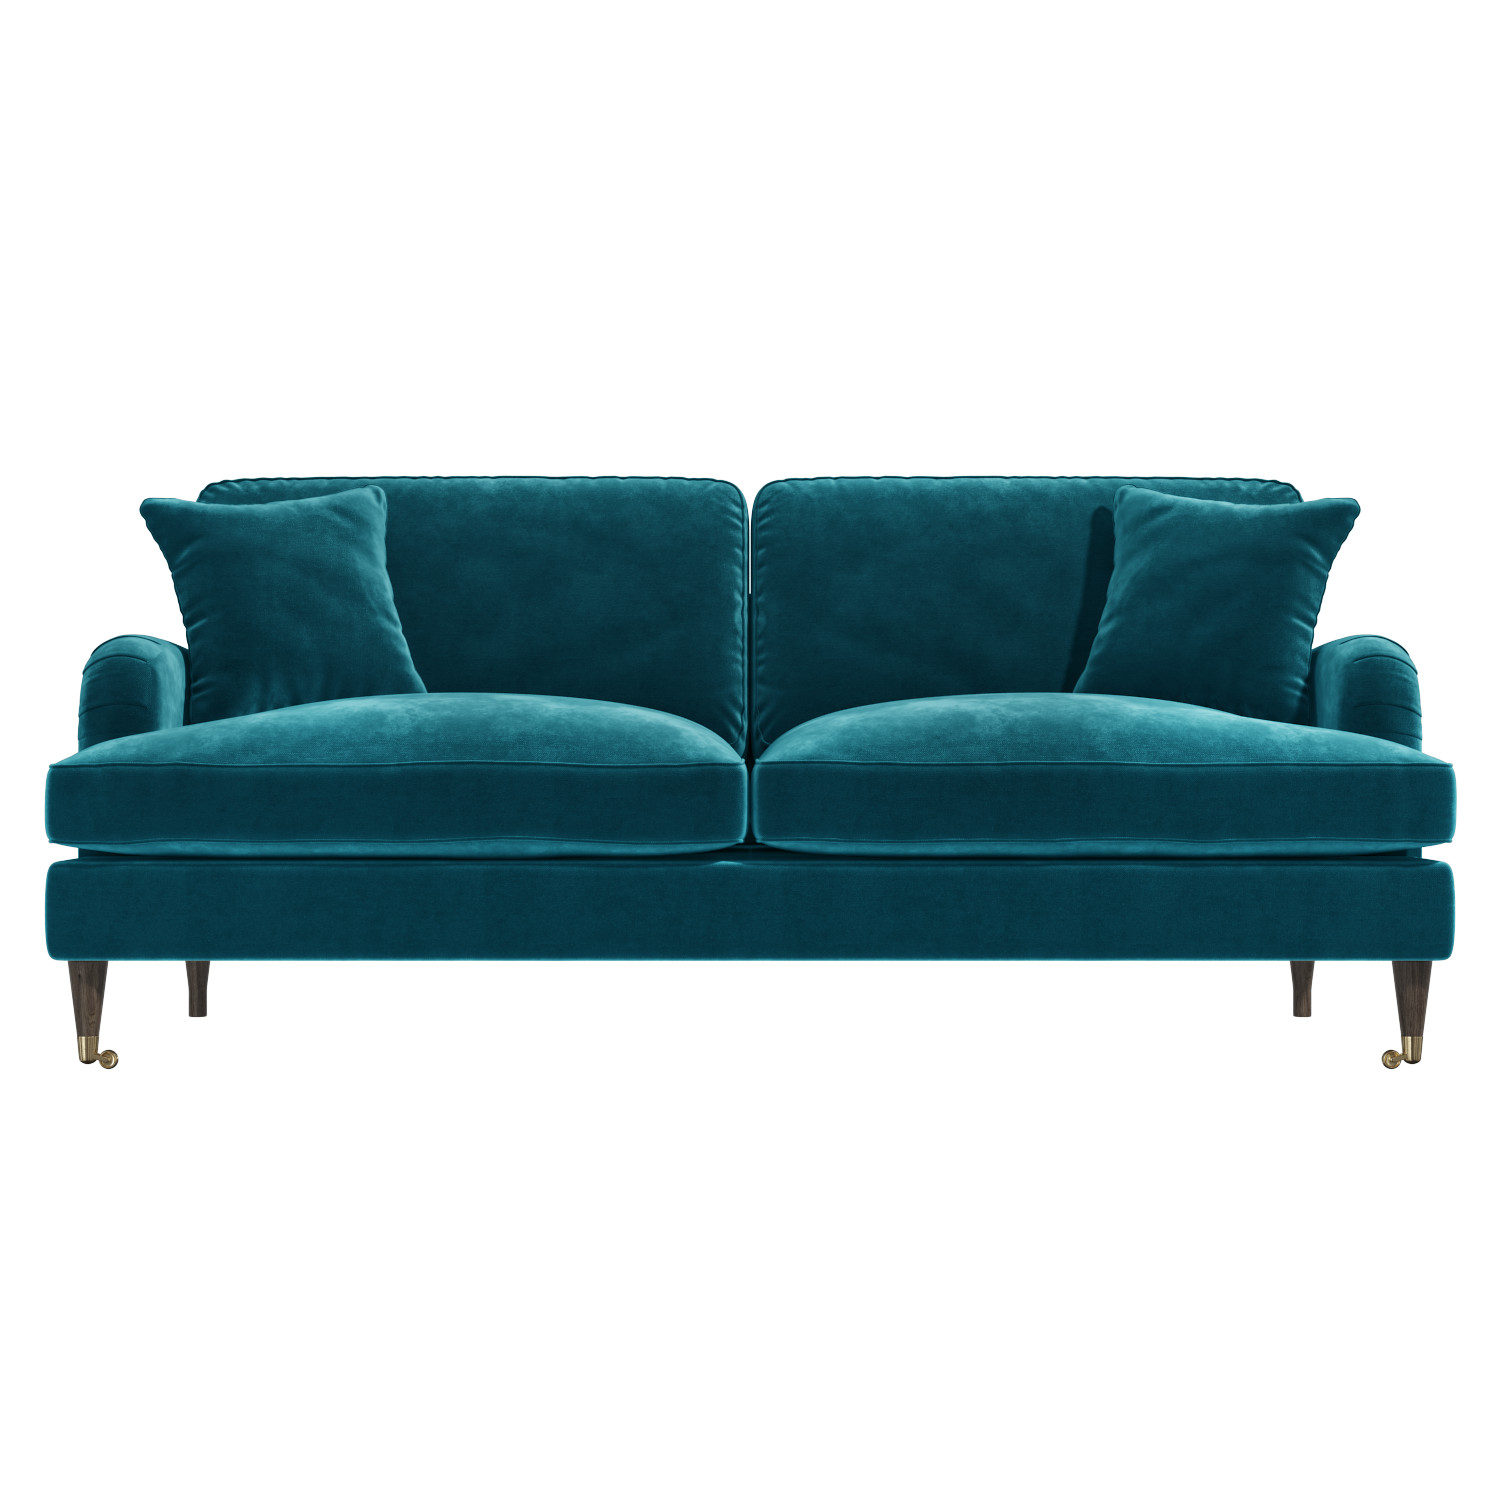 Photo of Teal velvet 3 seater sofa - payton